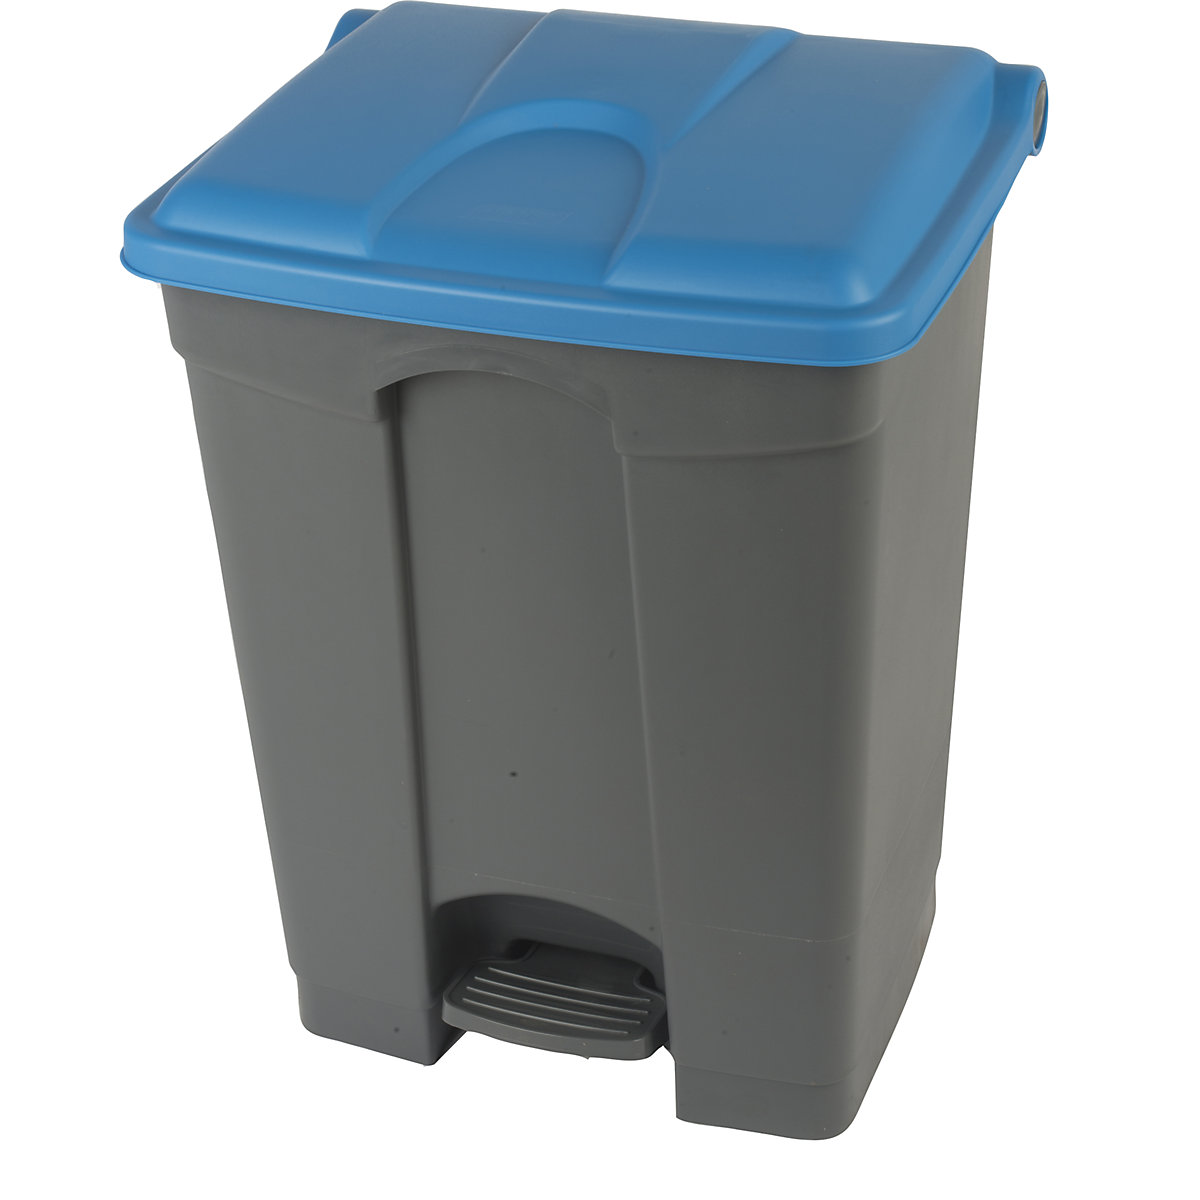 EUROKRAFTbasic – Nádoba na odpad s pedálem, objem 70 l, š x v x h 505 x 675 x 415 mm, šedá, modré víko